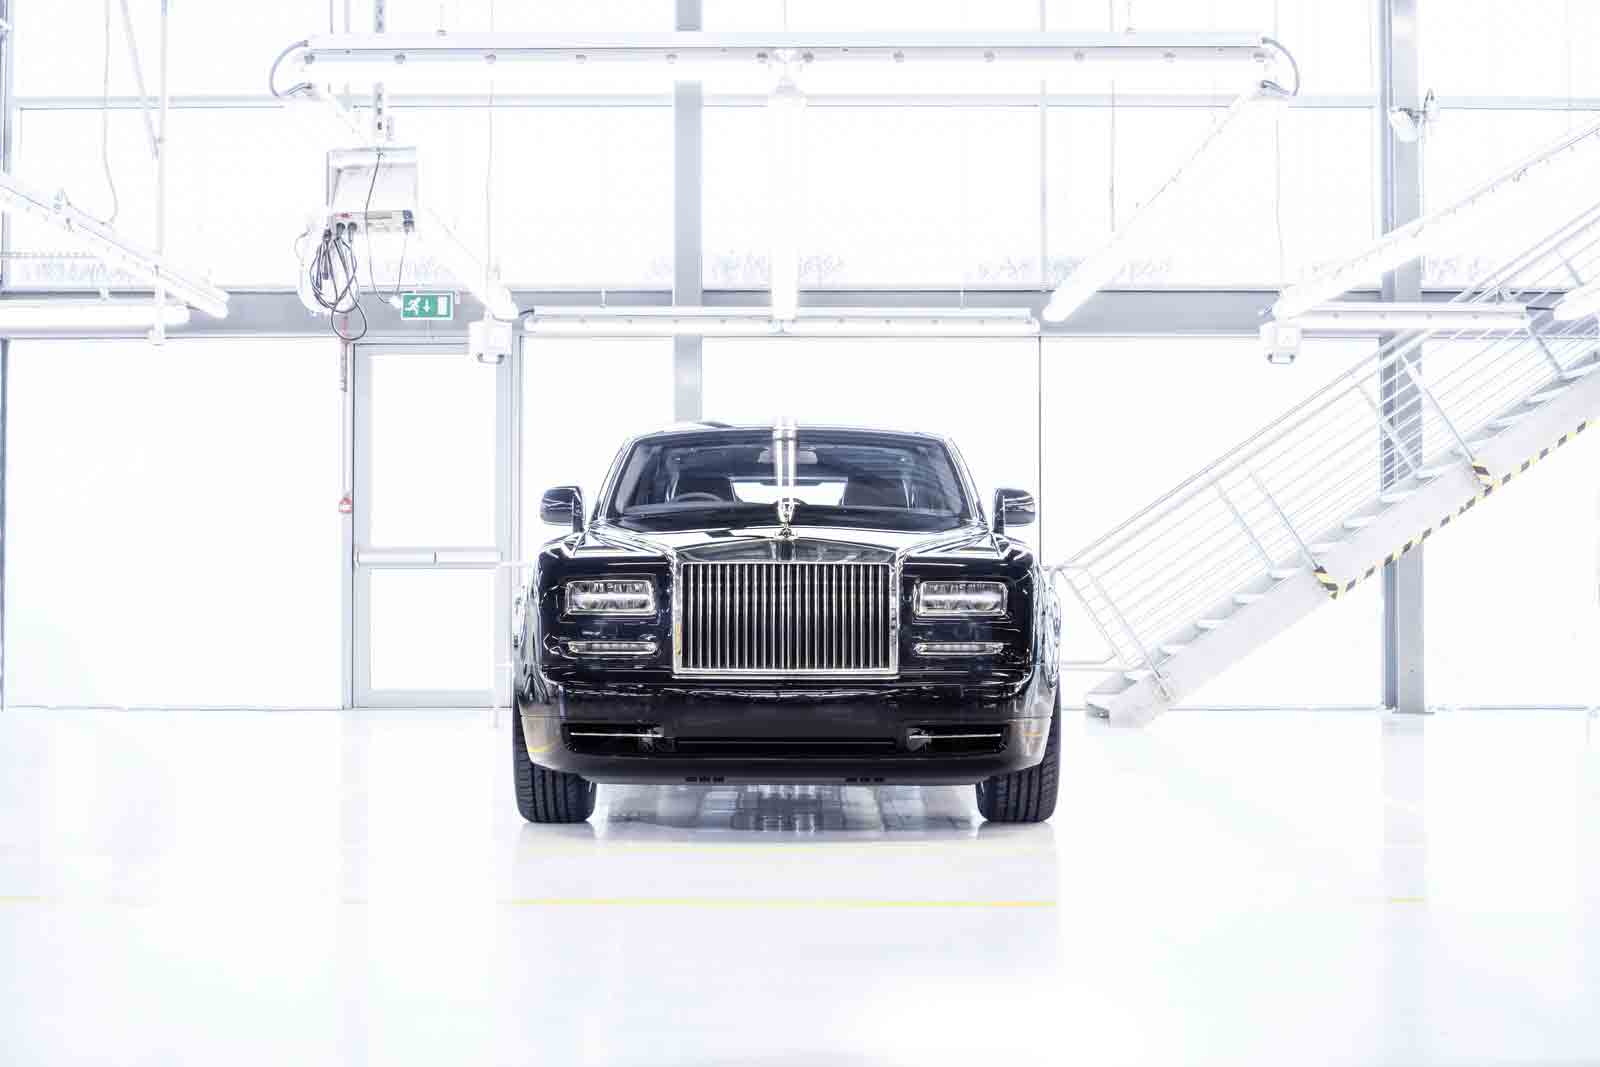 Mobil Baru, phantom-vii: Rolls-Royce Phantom Generasi VII, Edisi yang Terakhir